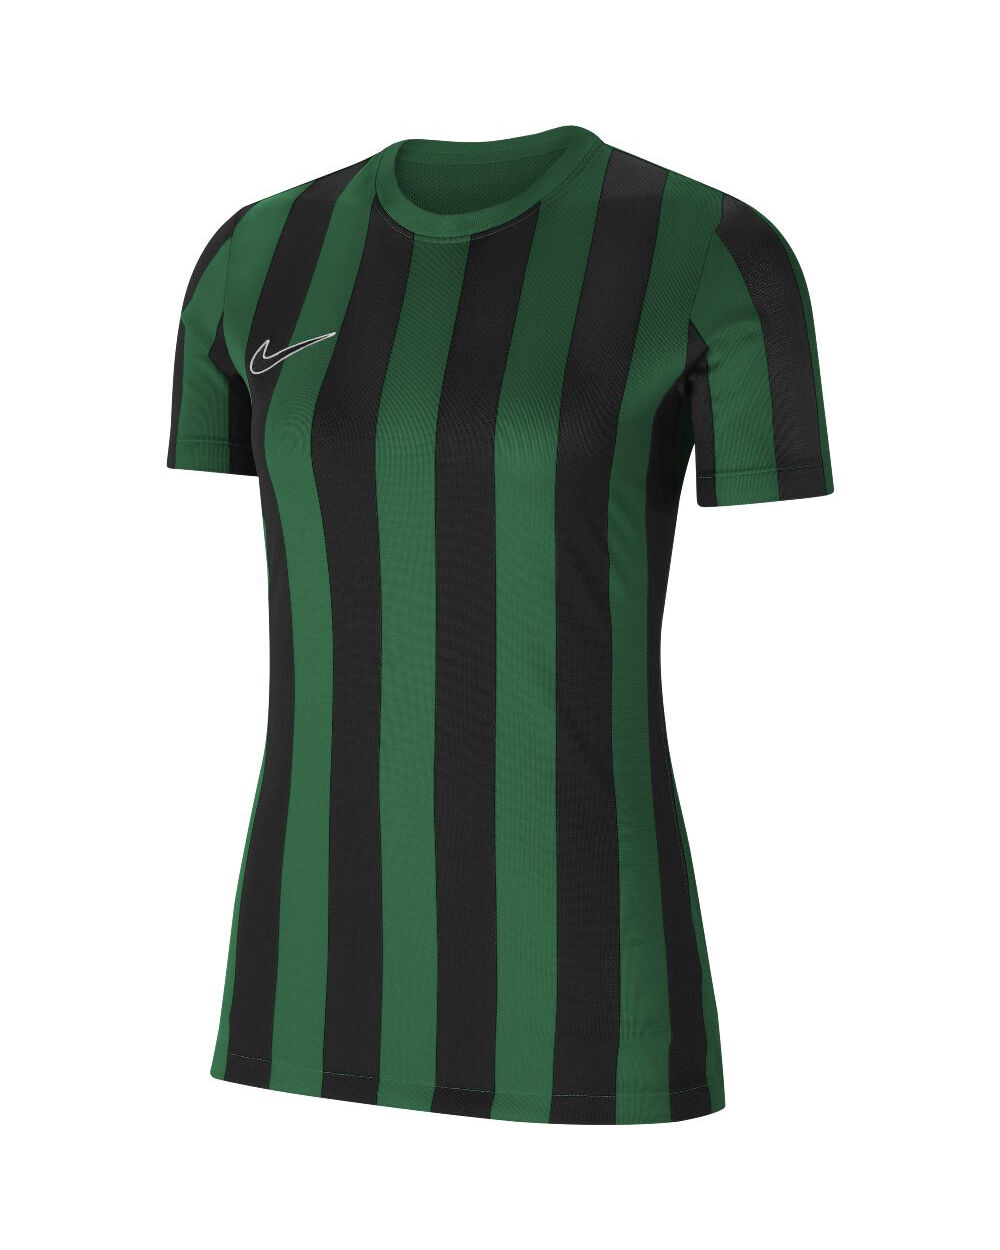 Nike Maglia Striped Division IV Verde e Nero per Donne CW3816-302 L